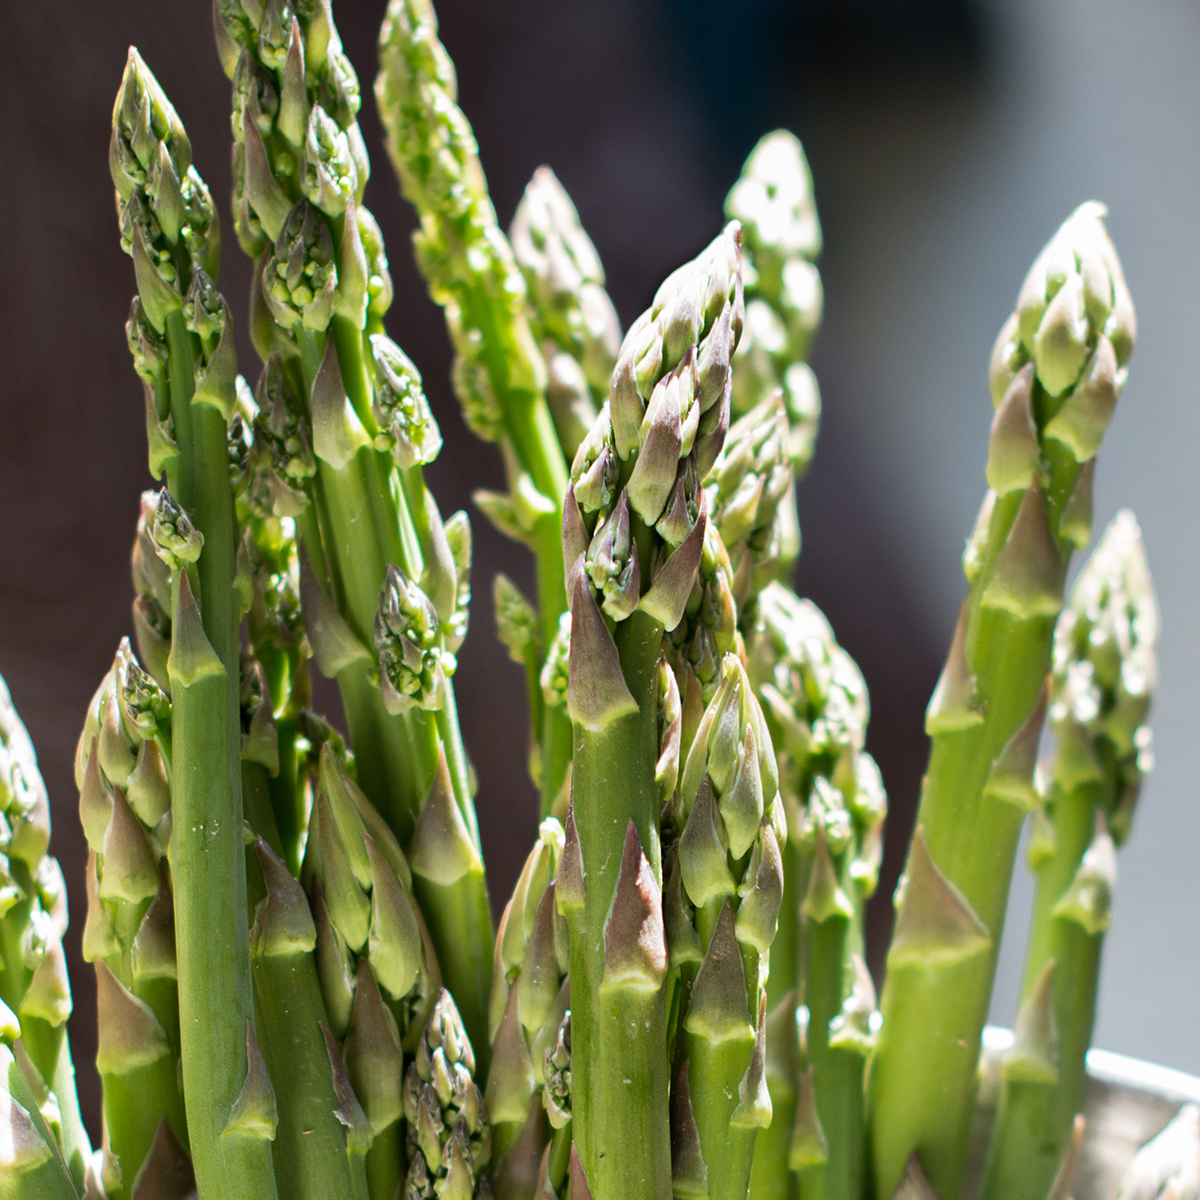 asparagus-detail-2021-08-29-04-30-49-utc